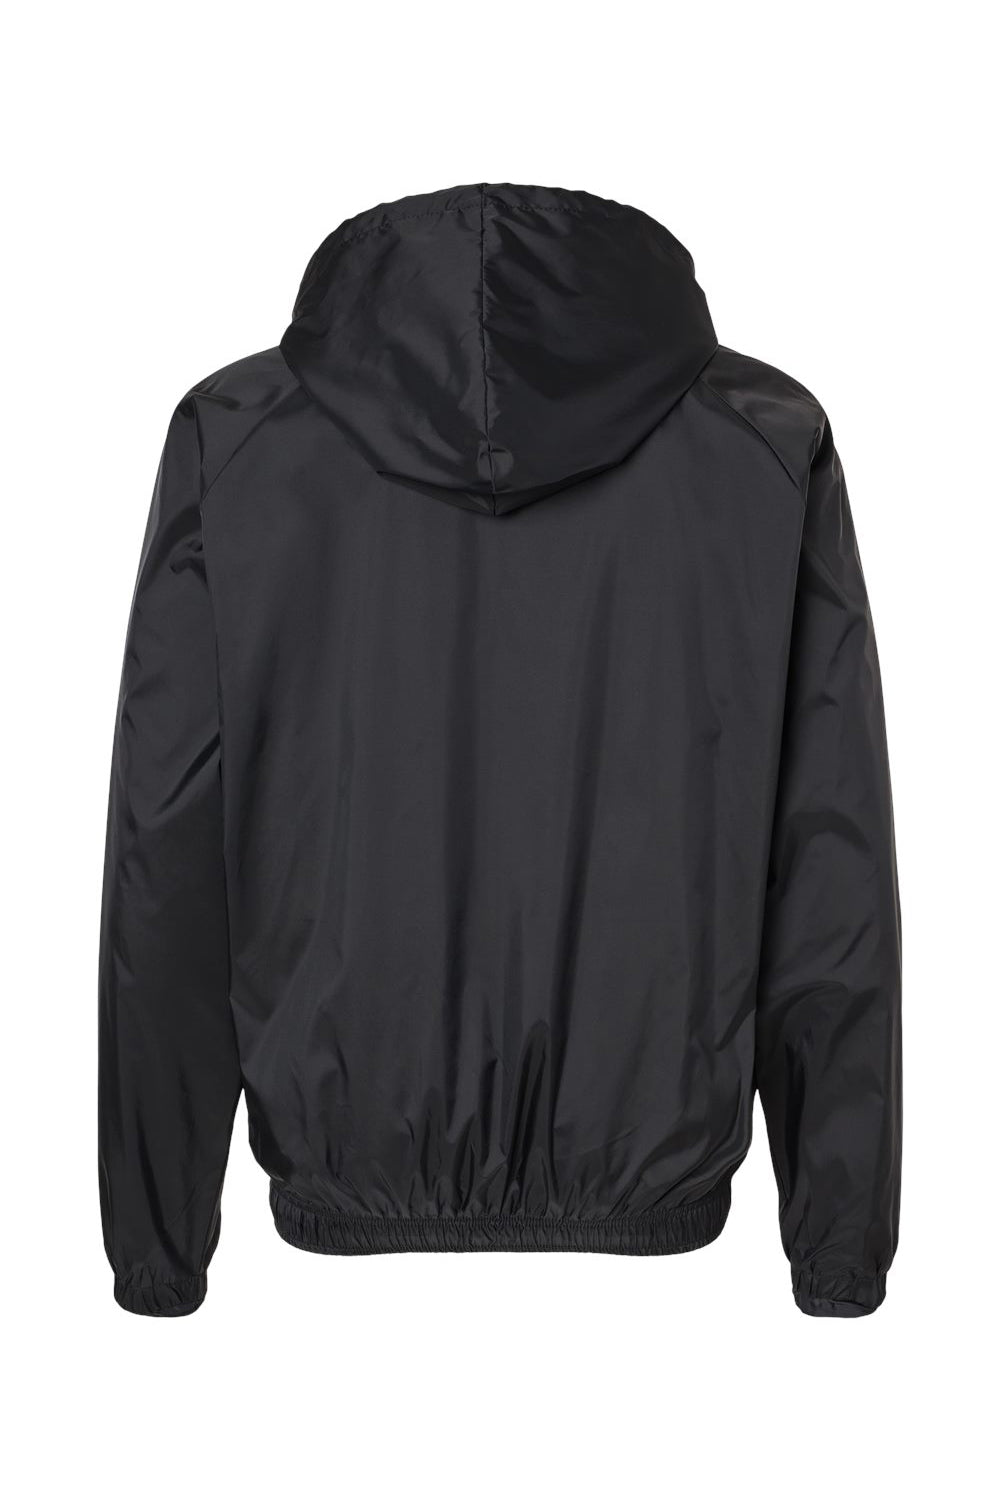 Burnside 9728 Mens Mentor Full Zip Hooded Coaches Jacket Black Flat Back